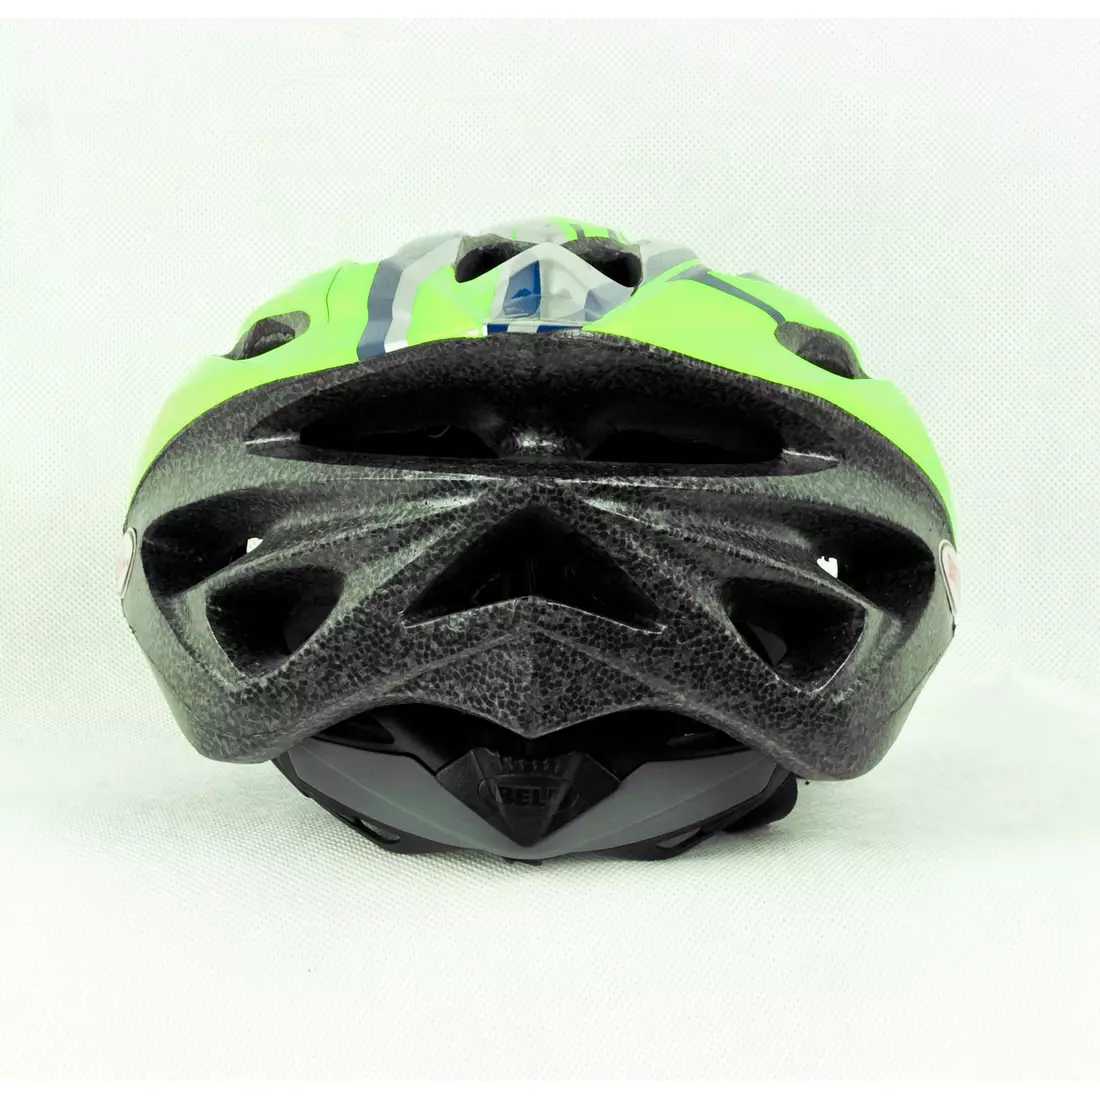 BELL SOLAR - bicycle helmet, fluoride